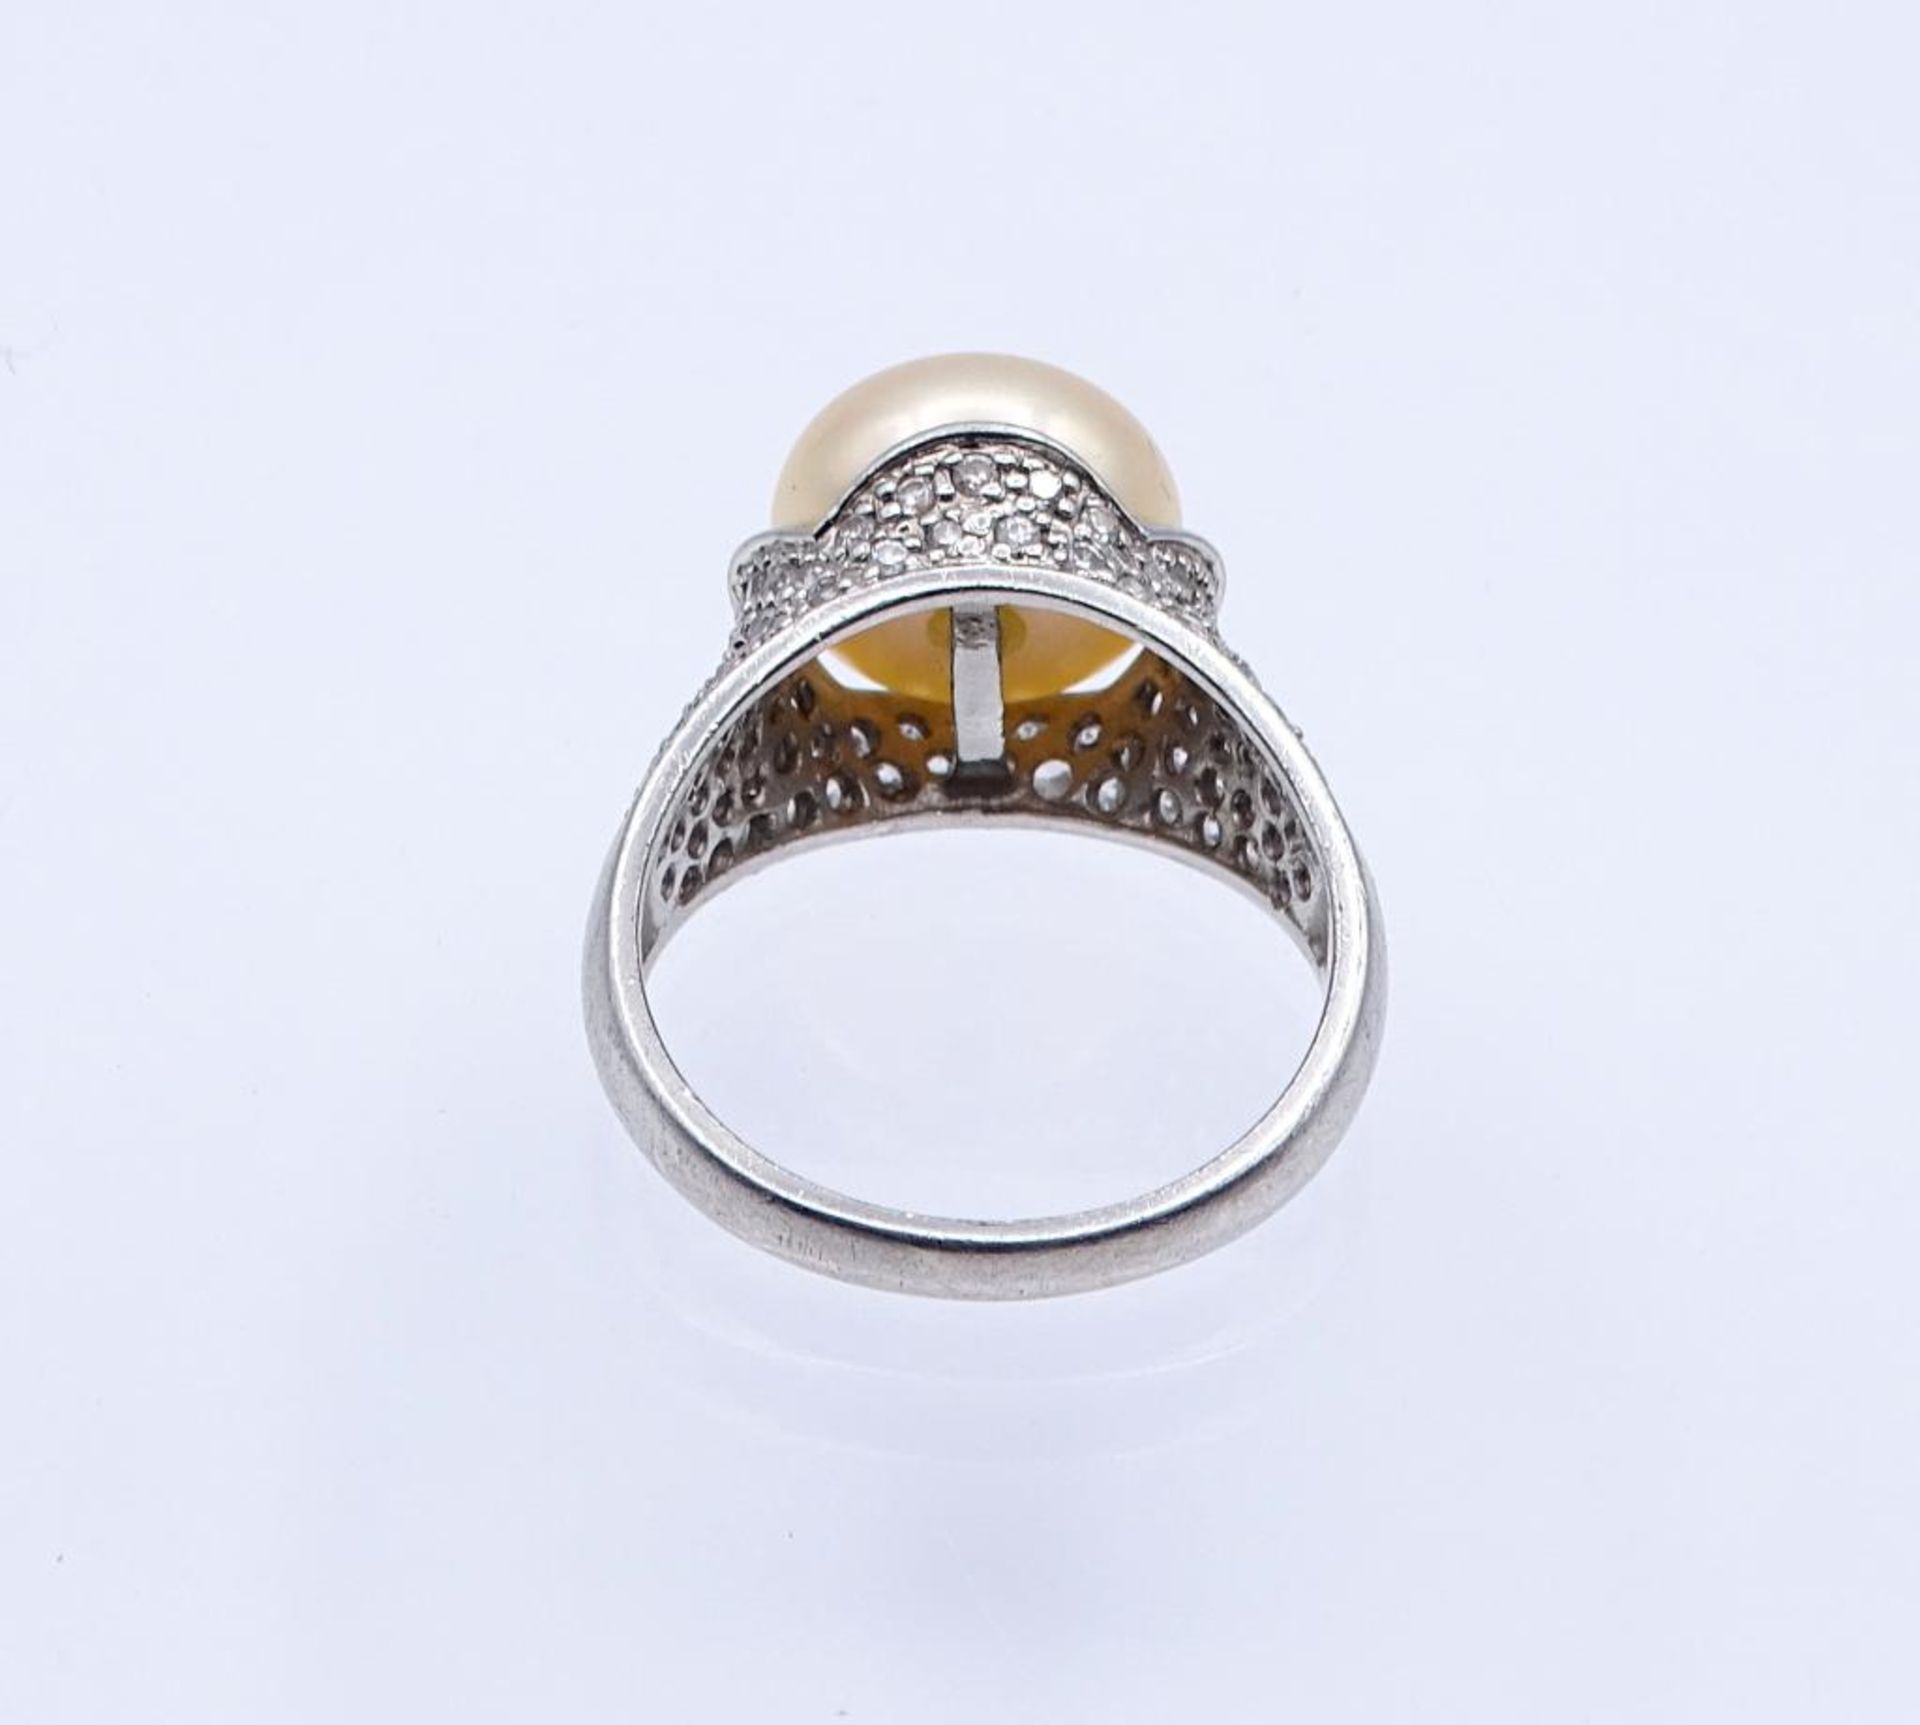 Silber Ring mit Perle und klaren Steinen,Silber 925/000, 5,8gr.RG 58- - -22.61 % buyer's premium - Bild 3 aus 3